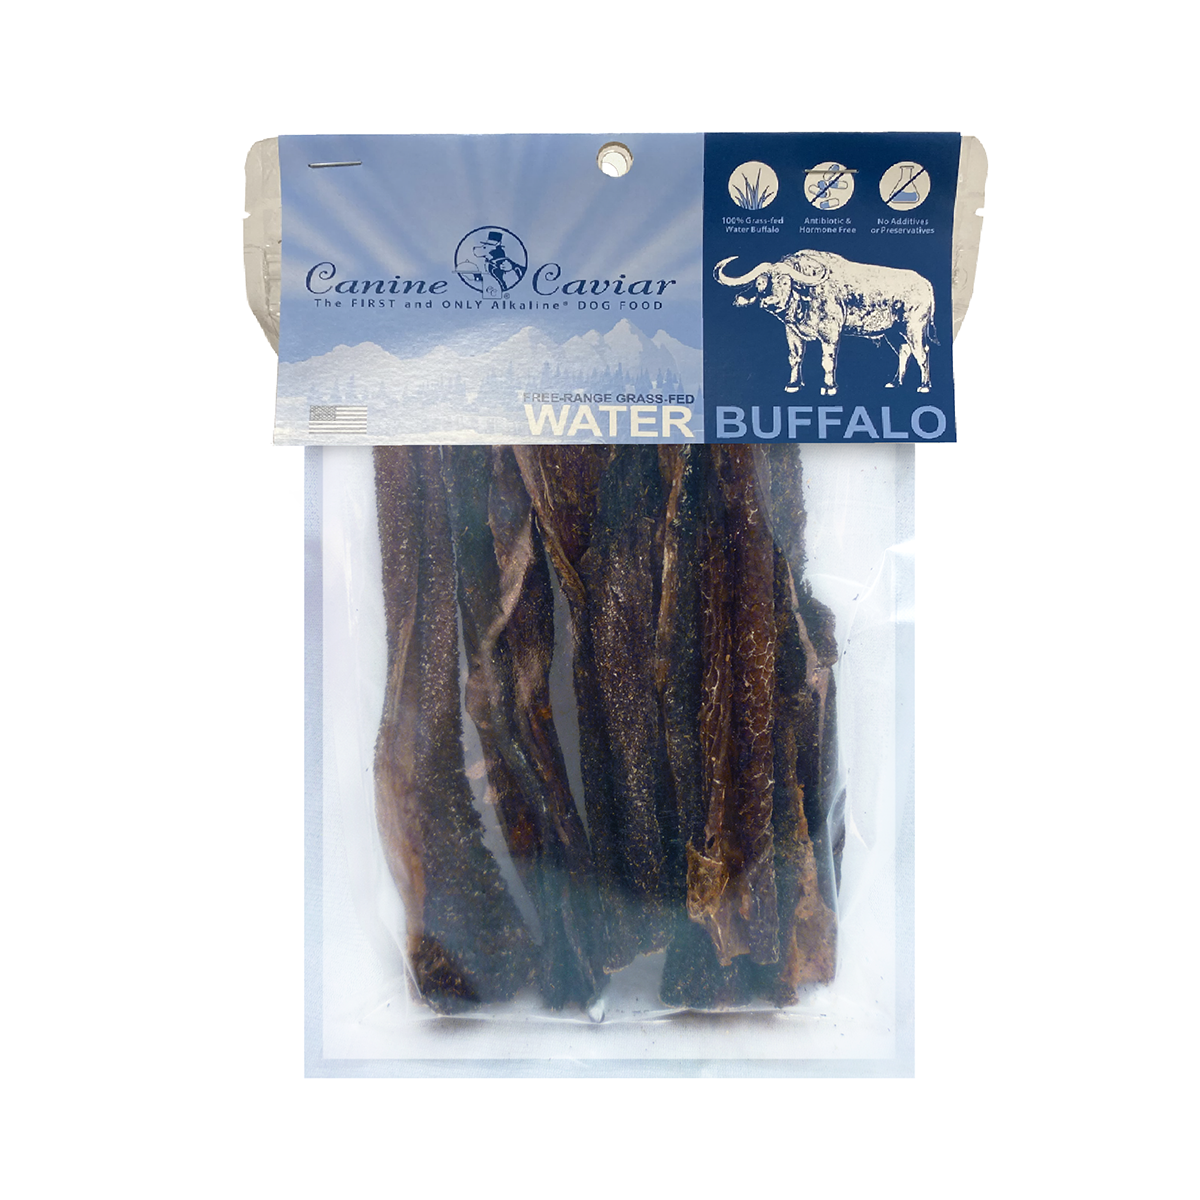 Canine Caviar Water Buffalo Tripe 6-Inch Dog Treats - Vanilla 6-pack